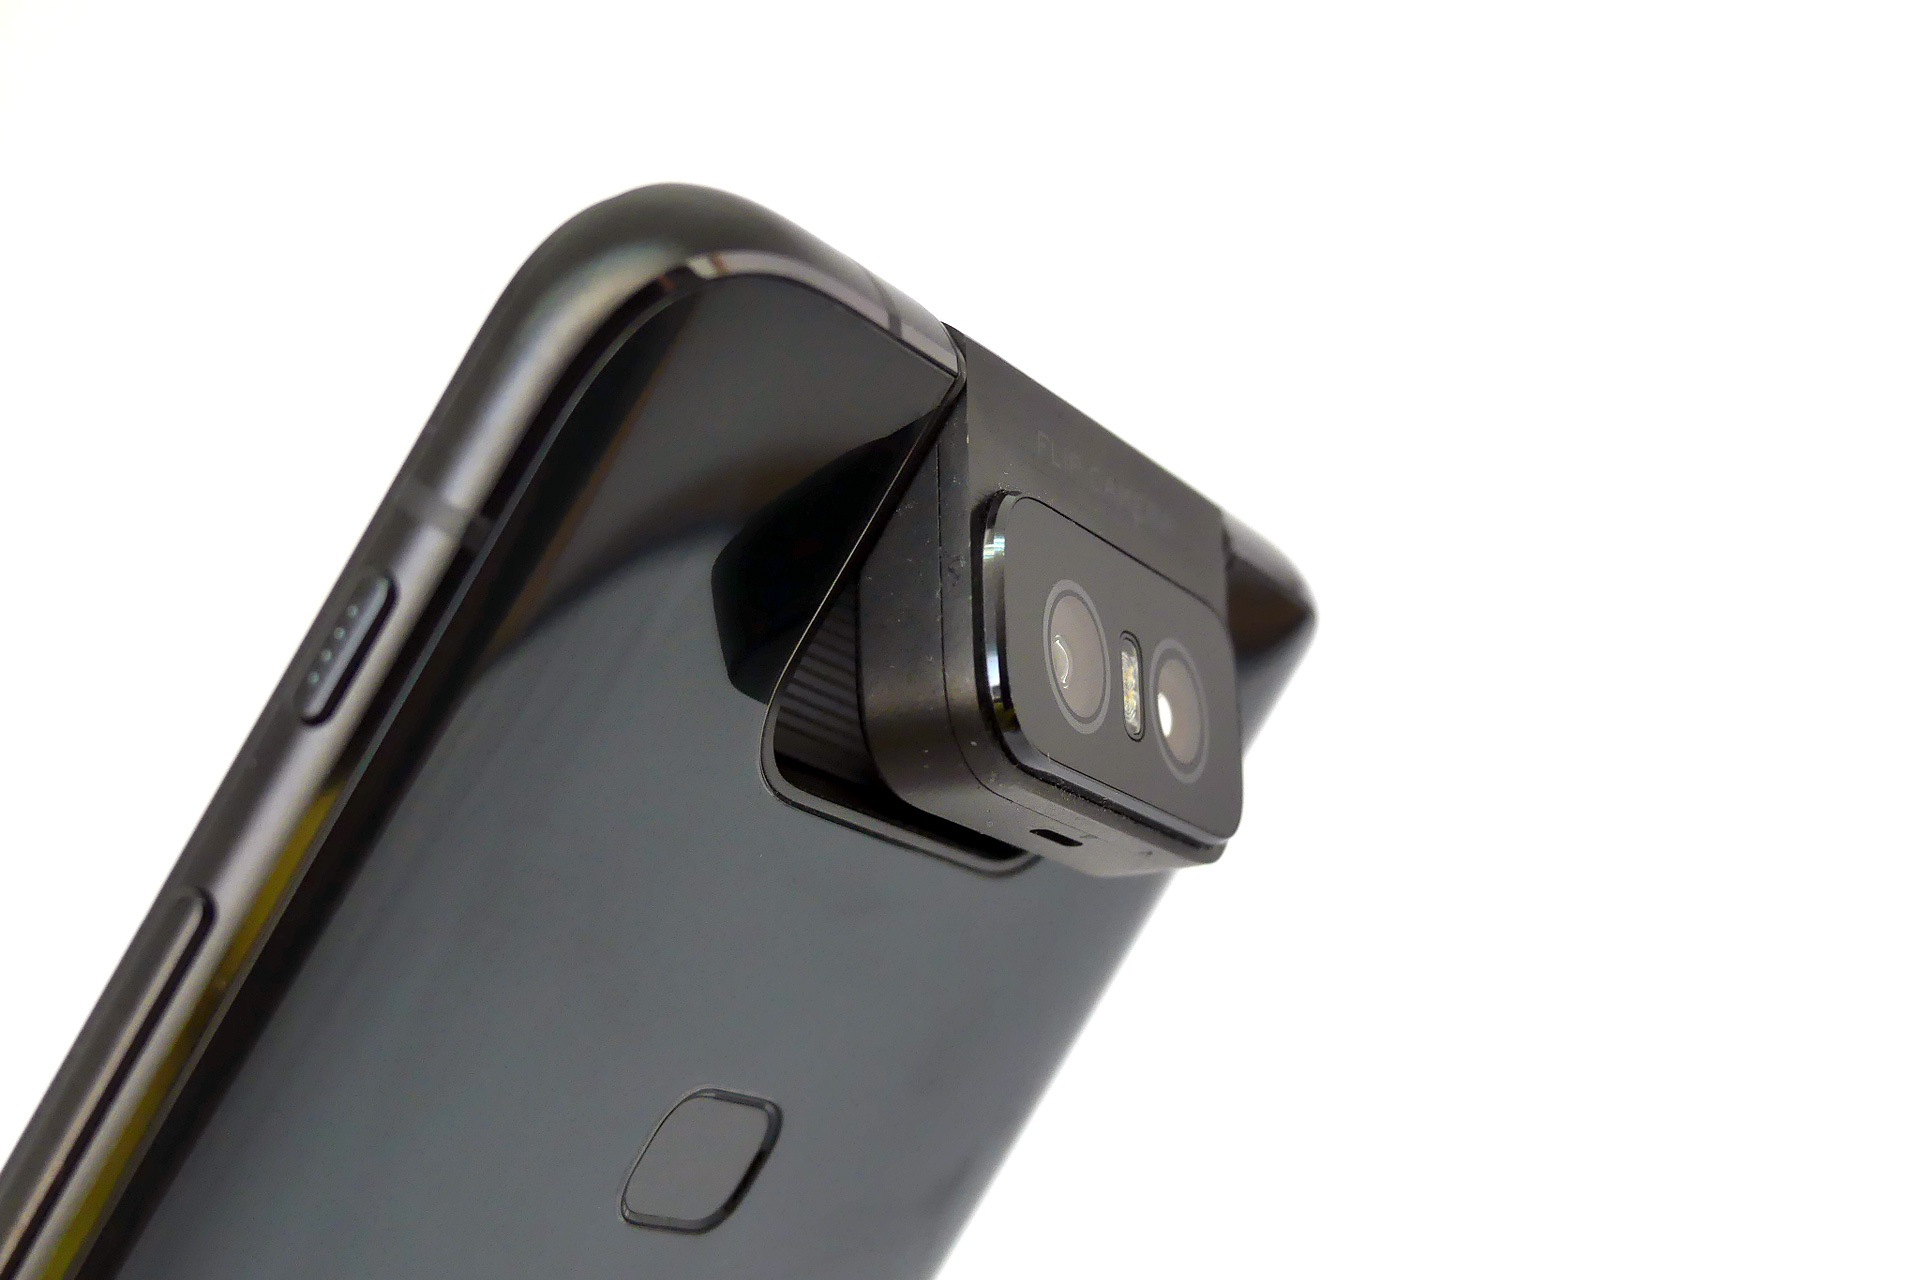 【PR】「ZenFone 6」は奇跡の組み合わせで生まれたハイスペックスマホ - ケータイ Watch